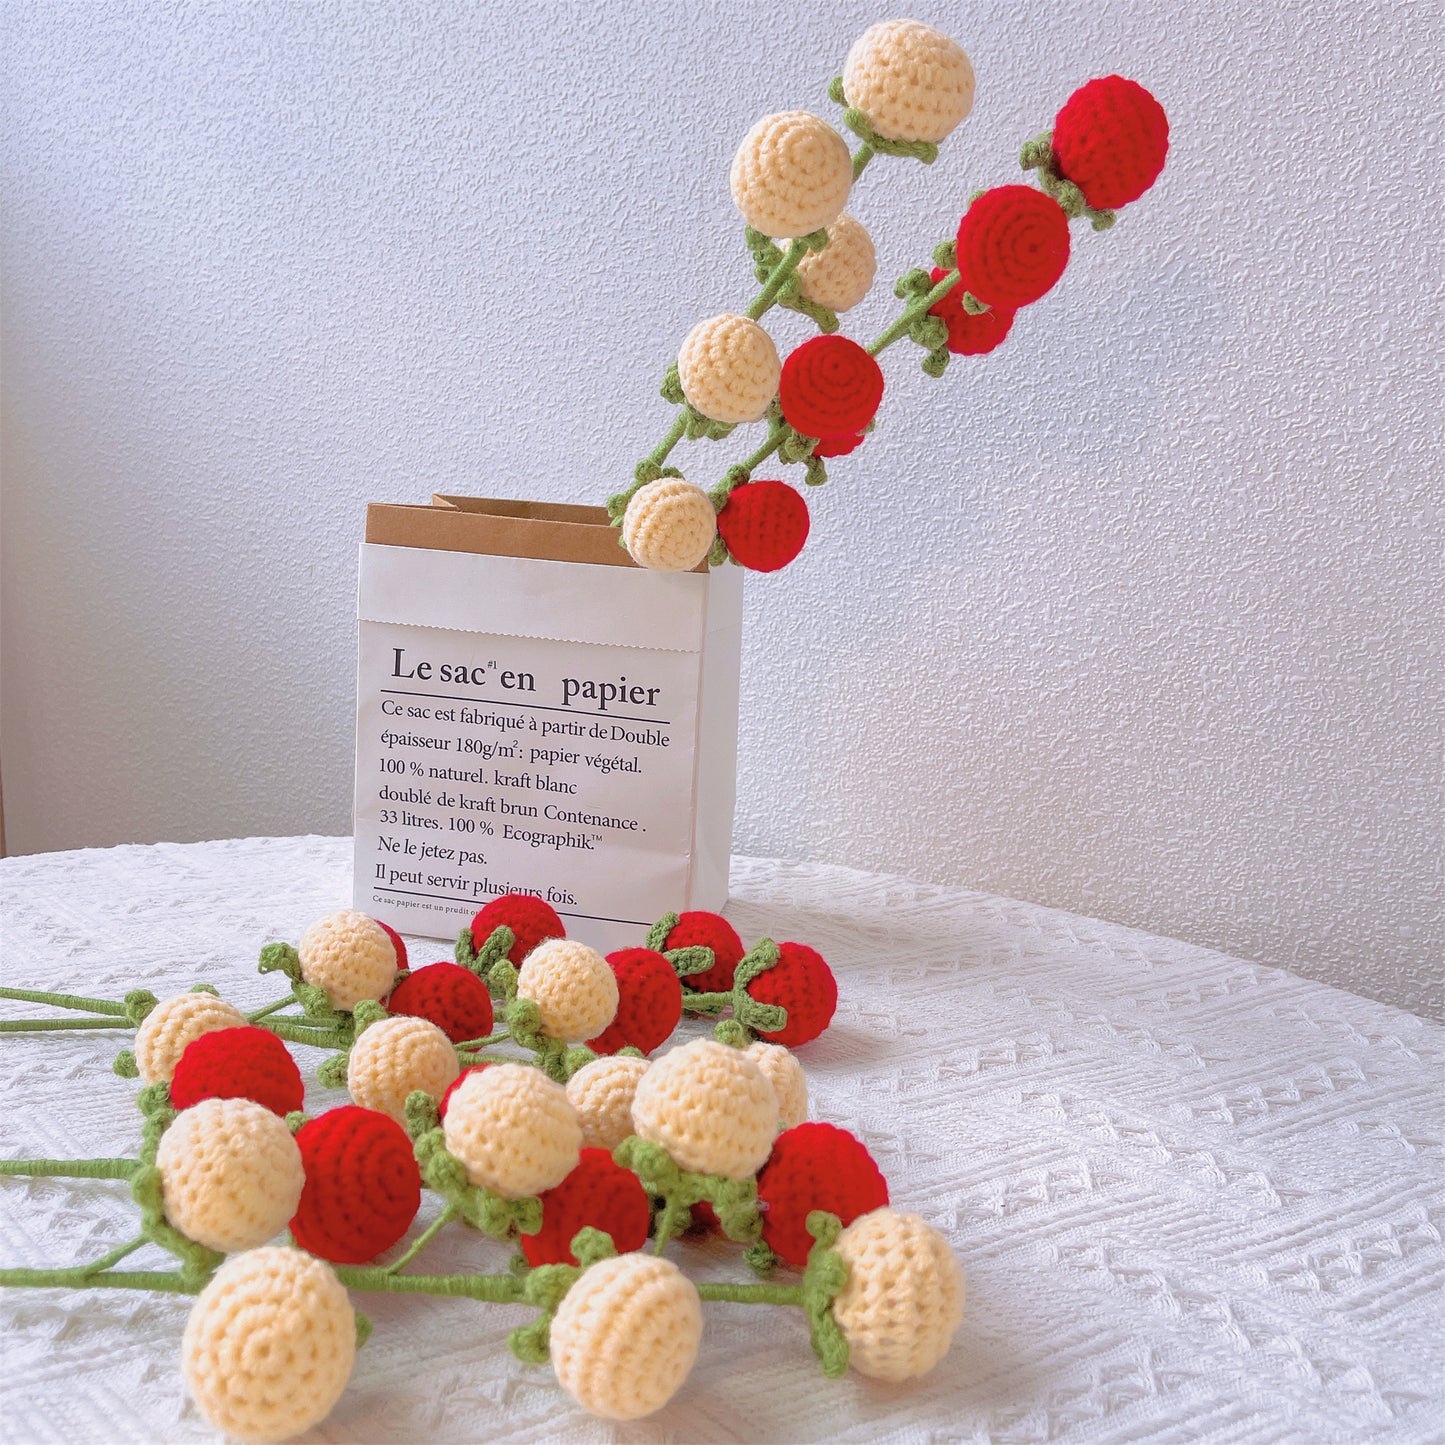 Tomato Trellis Blossom: Handcrafted Crochet Flower Stake for Vibrant Vine Gardens